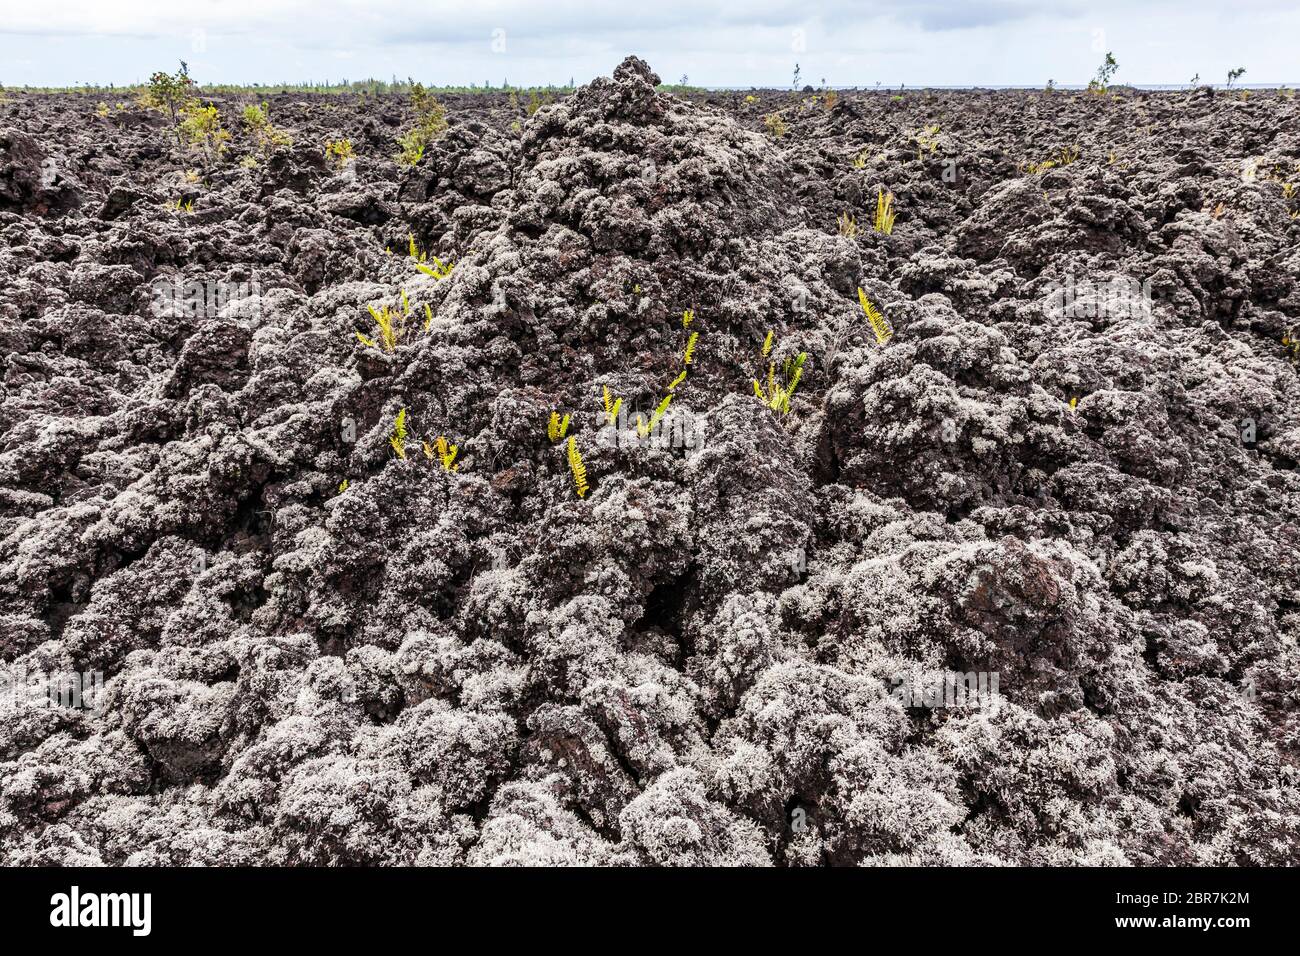 A'a champ de lave couvert de Stereocaulon volcani, un lichen qui aide à cultiver les sols sur les coulées de lave, Puna, Hawai'i, Hawaii, USA. Banque D'Images